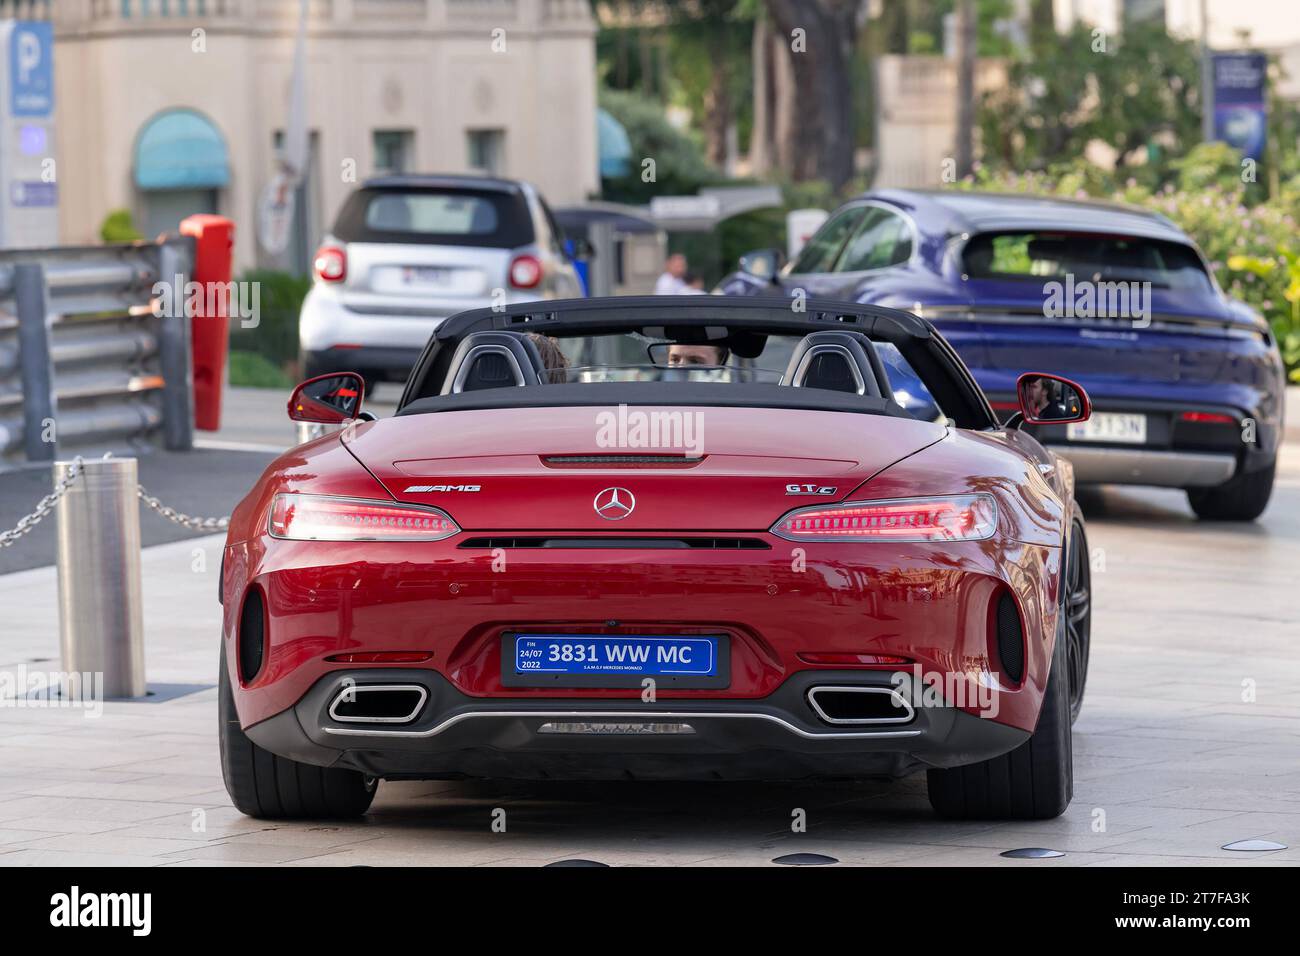 Monte Carlo, Monaco - Bourgogne Mercedes-AMG GT C Roadster conduite sur la place du Casino. Banque D'Images